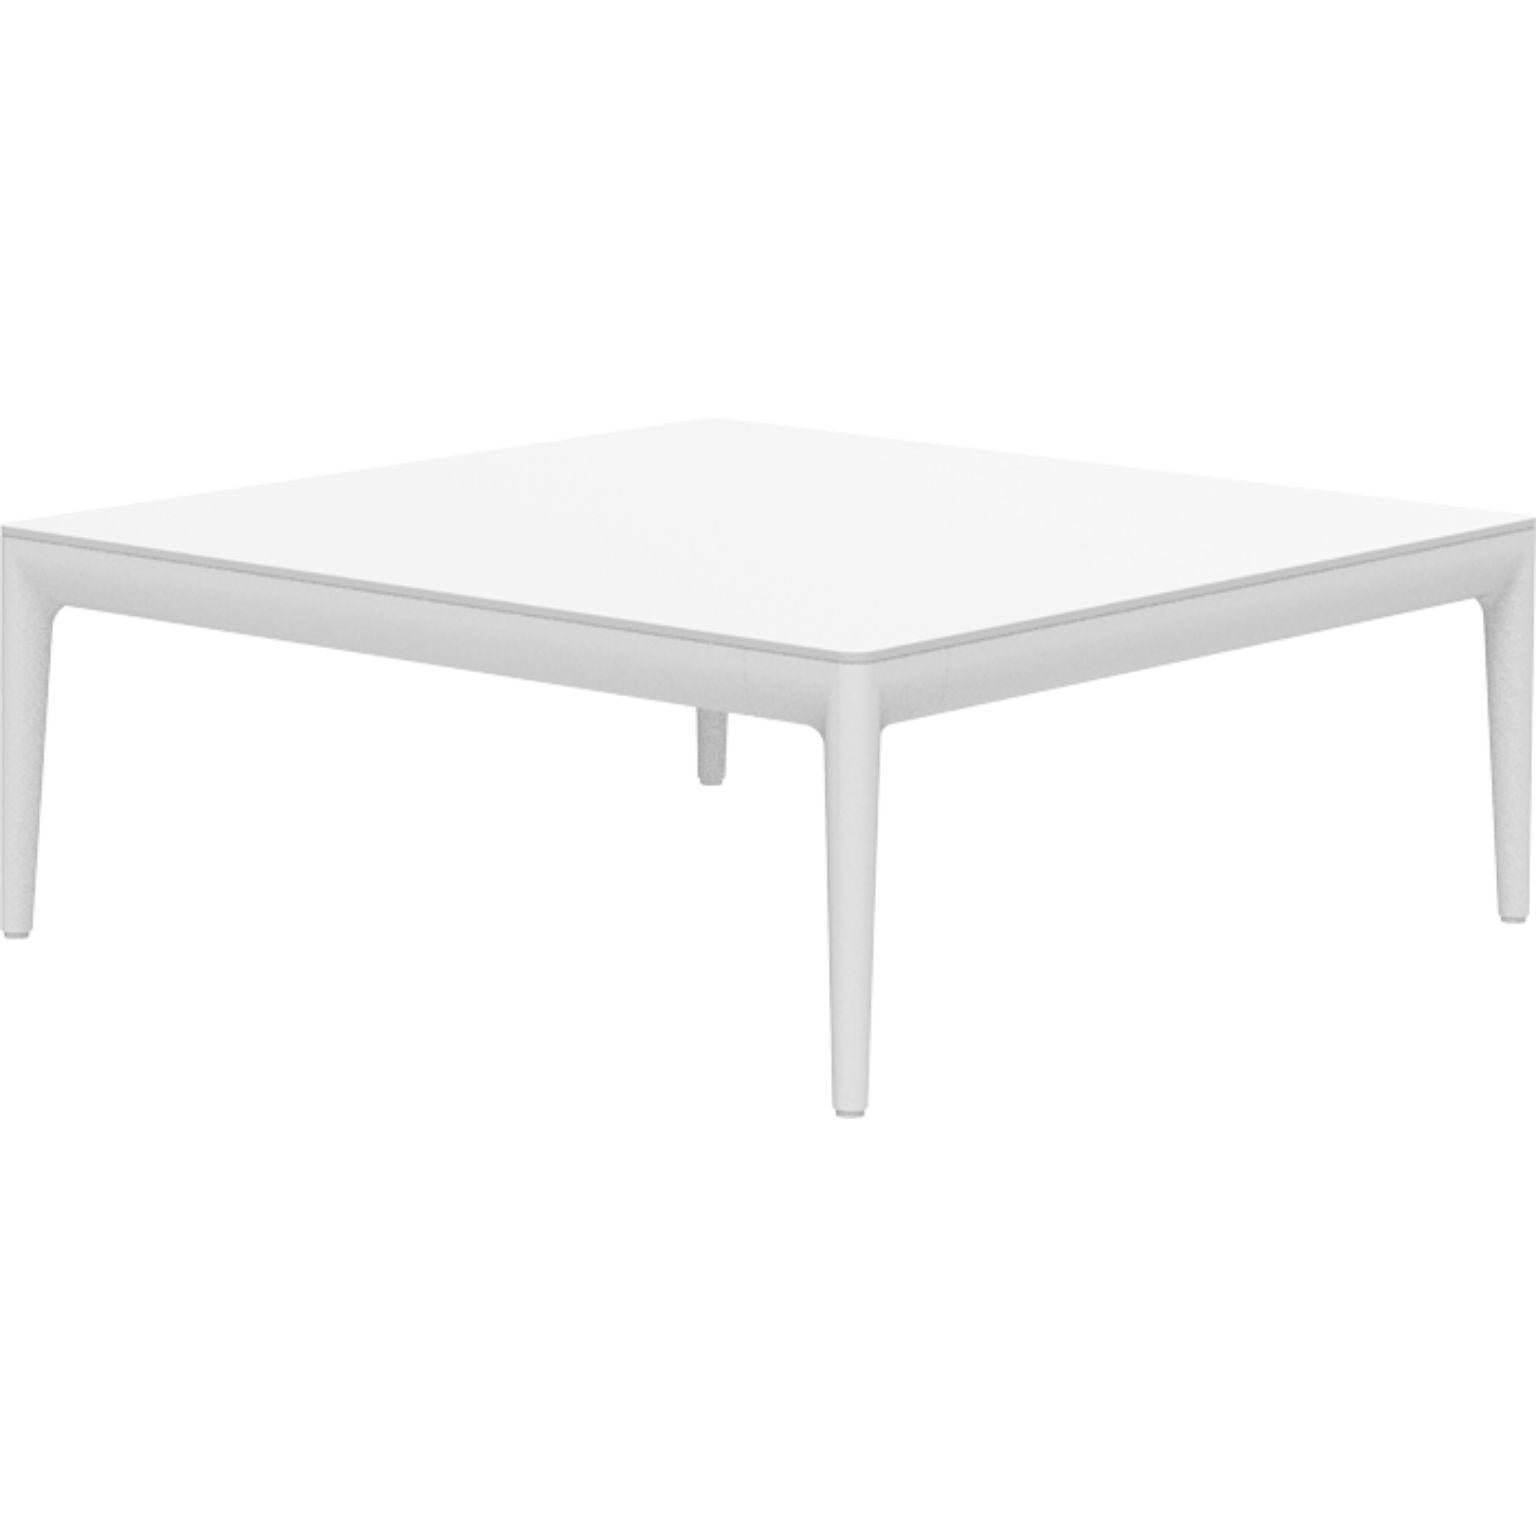 Table basse 76 blanche Ribbons par MOWEE
Dimensions : D76 x L76 x H29 cm
Matériau : Aluminium et plateau HPL.
Poids : 12 kg.
Également disponible en différentes couleurs et finitions. (HPL Black Edge ou Neolith top).

Une collection